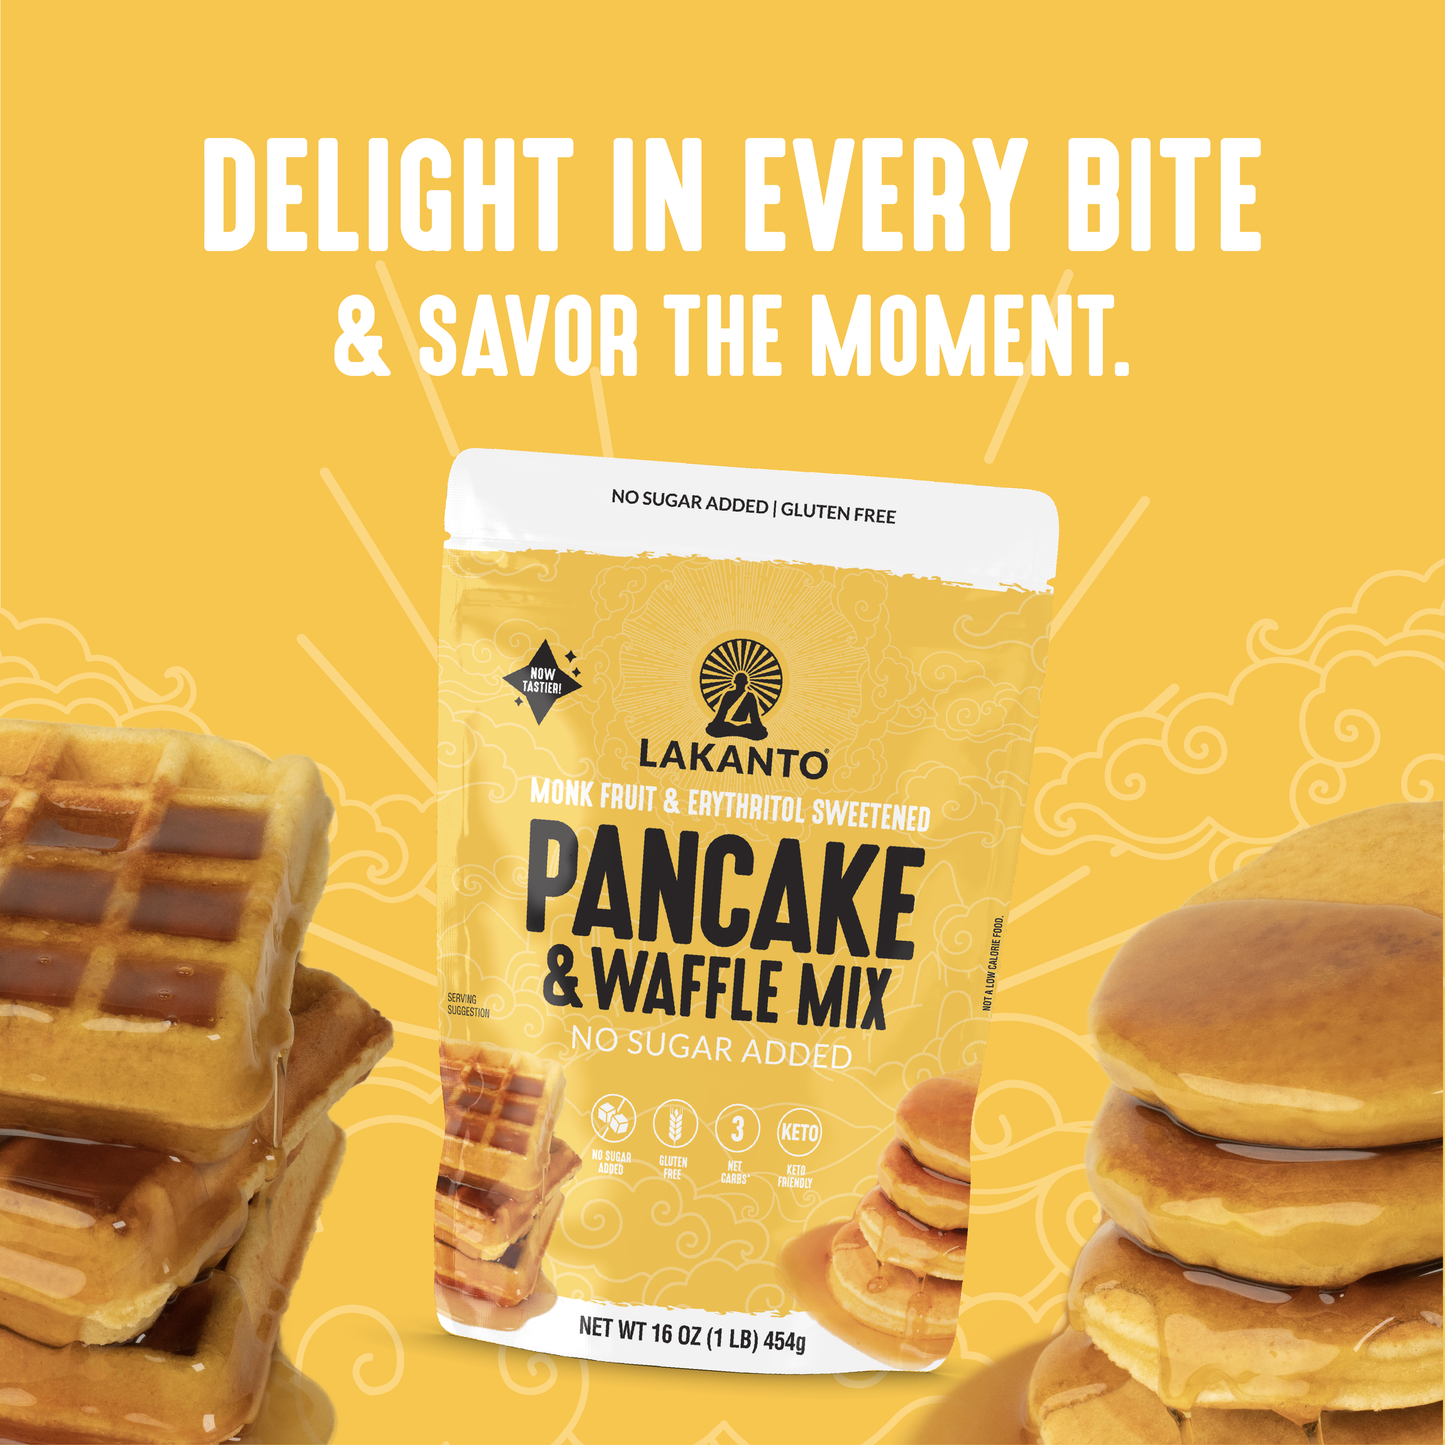 Pancake and Waffle Mix (New) - No Sugar Added